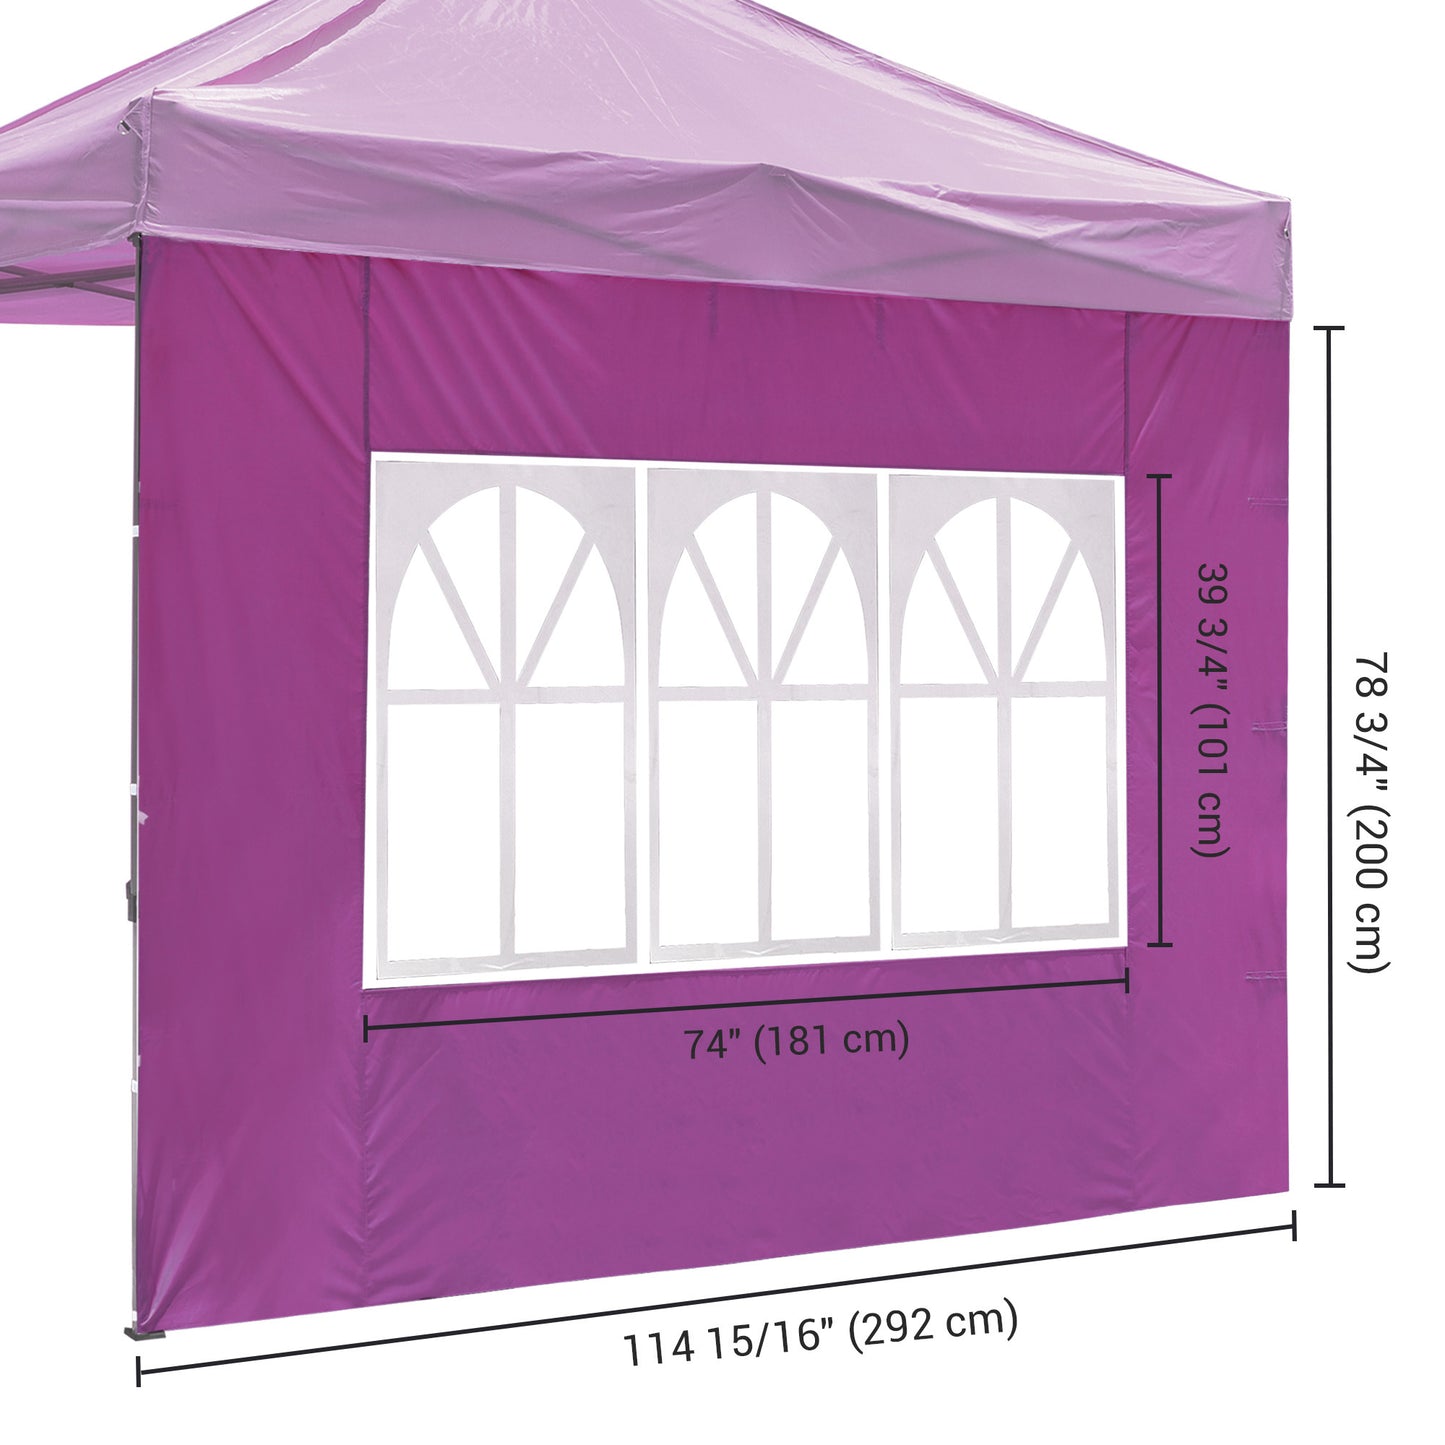 10x10ft EZ Canopy Gazebo With Windows/Purple